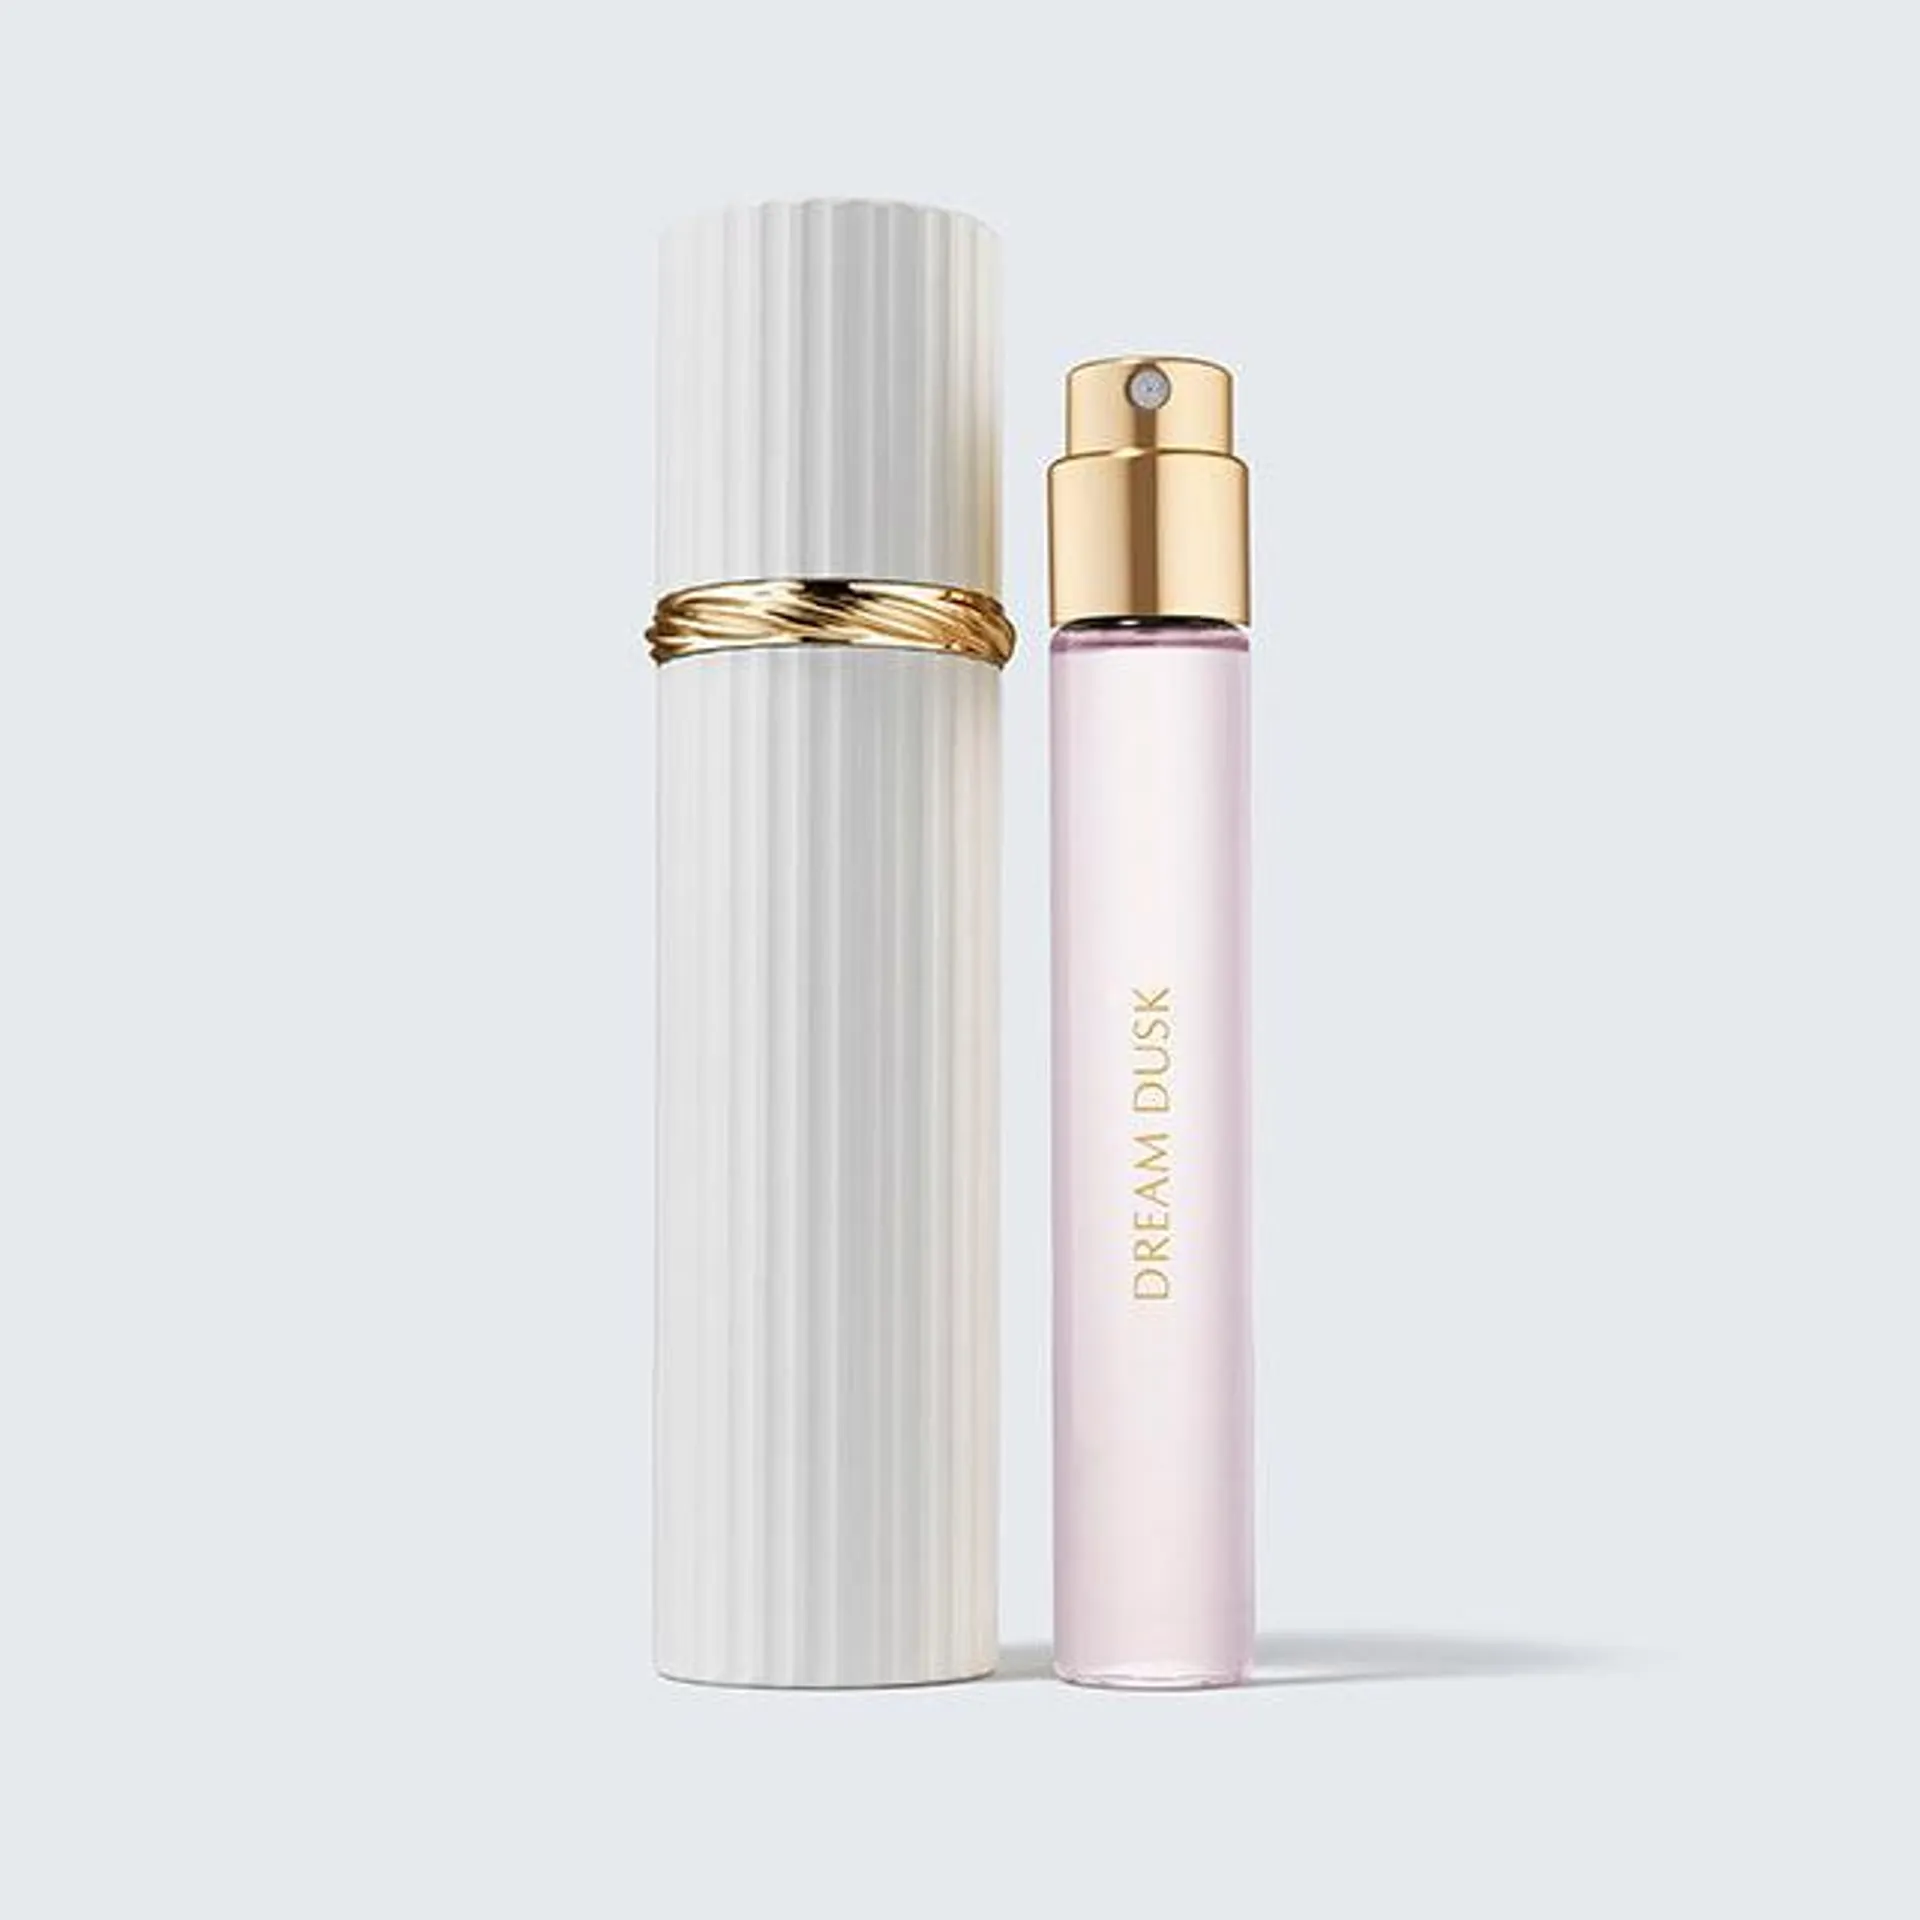 Dream Dusk Travel Size with Refillable Atomizer Case Eau de Parfum Spray